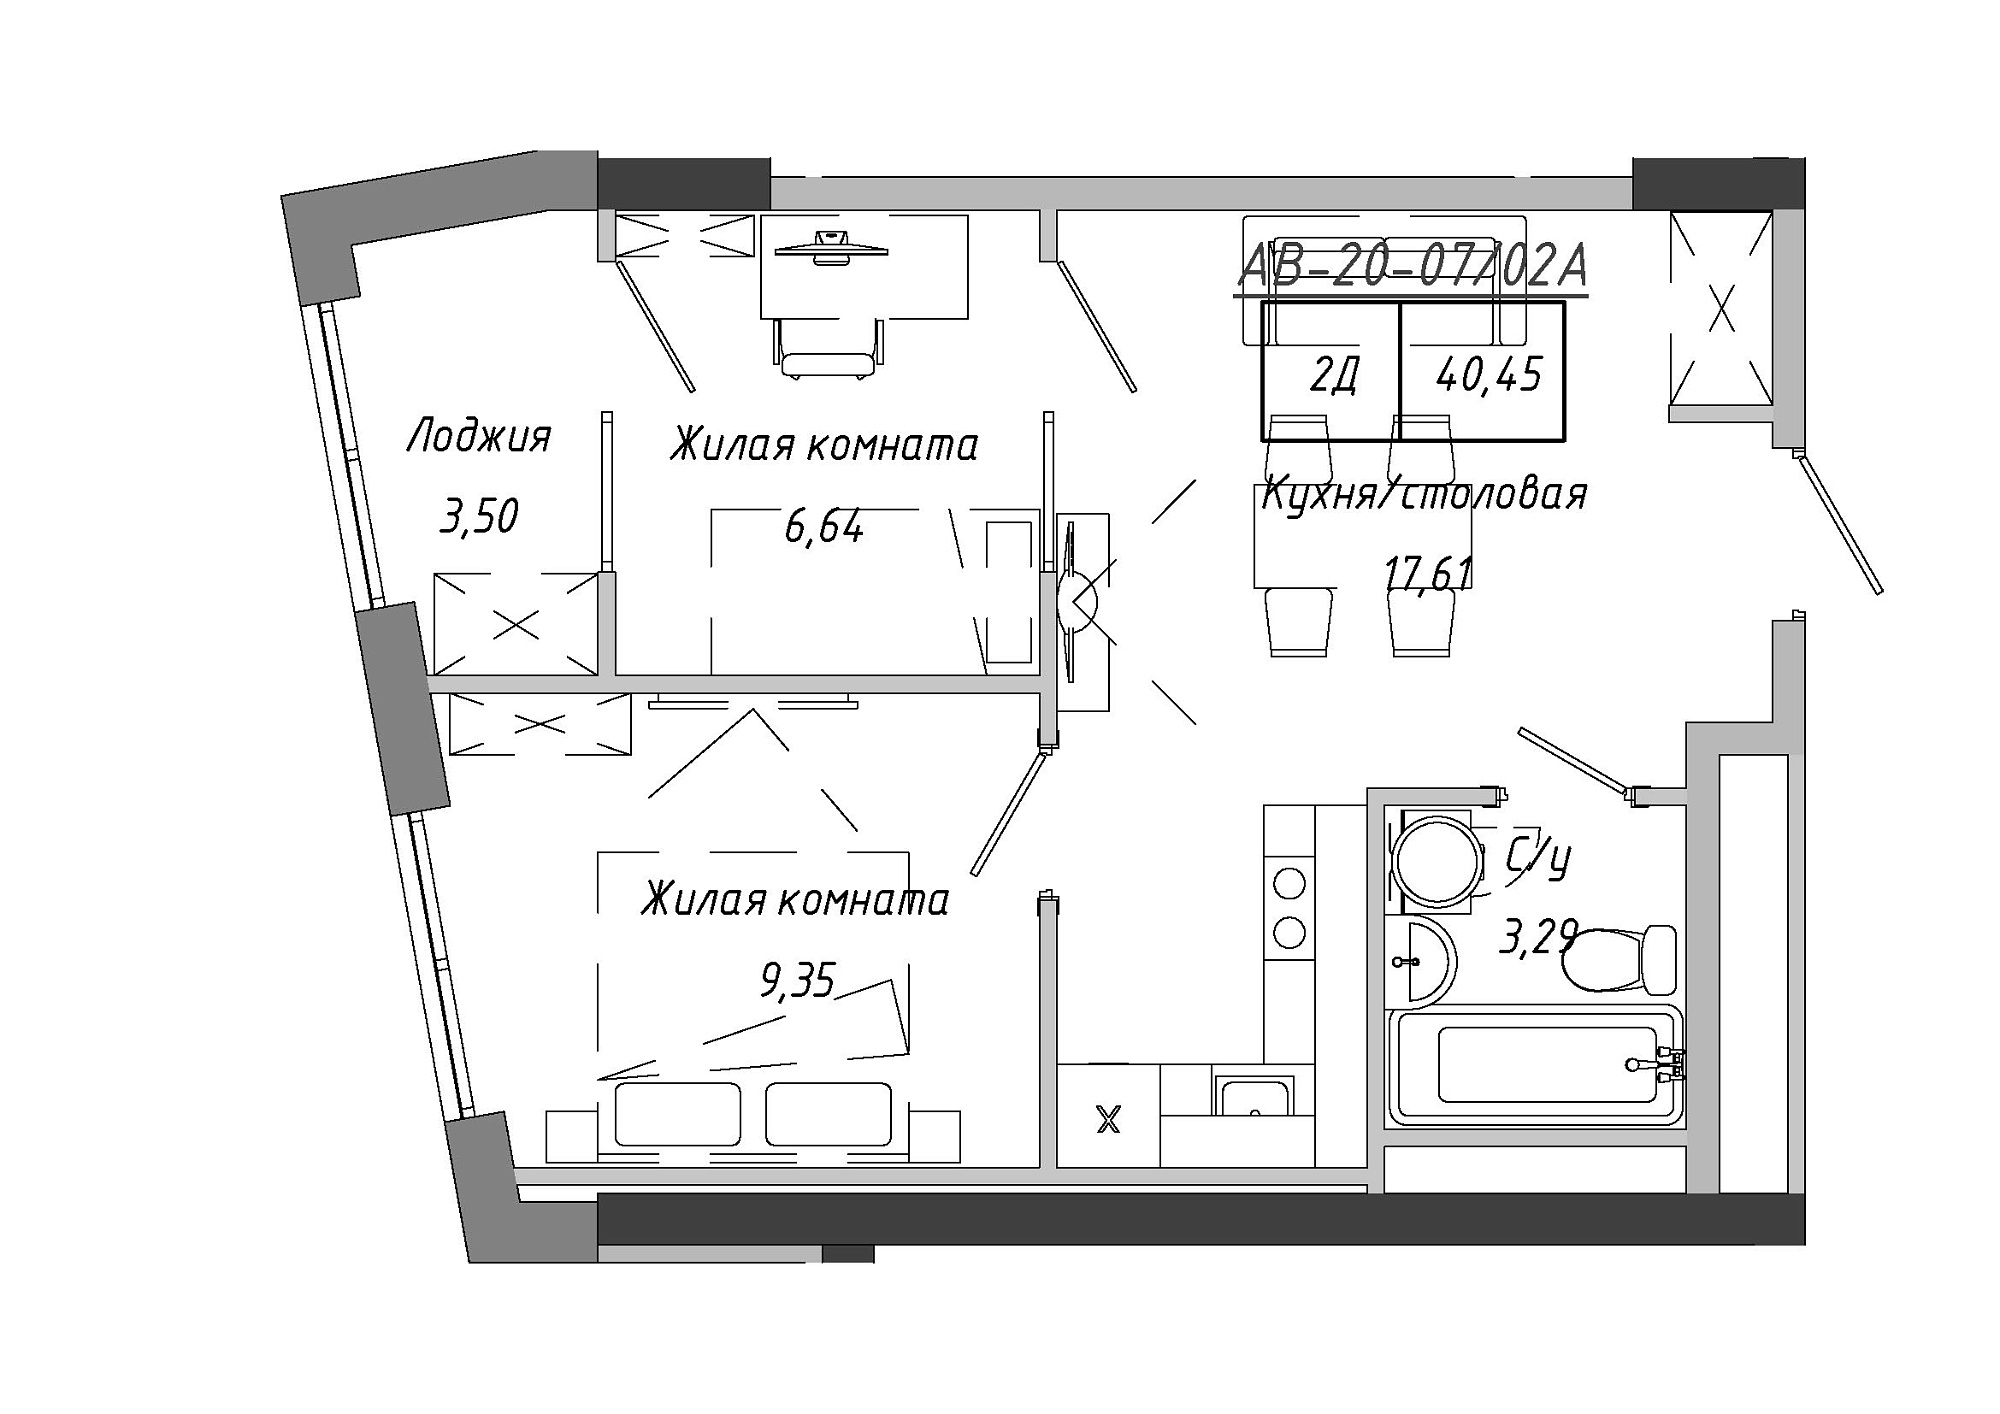 Планування 2-к квартира площею 41.9м2, AB-20-07/0002а.